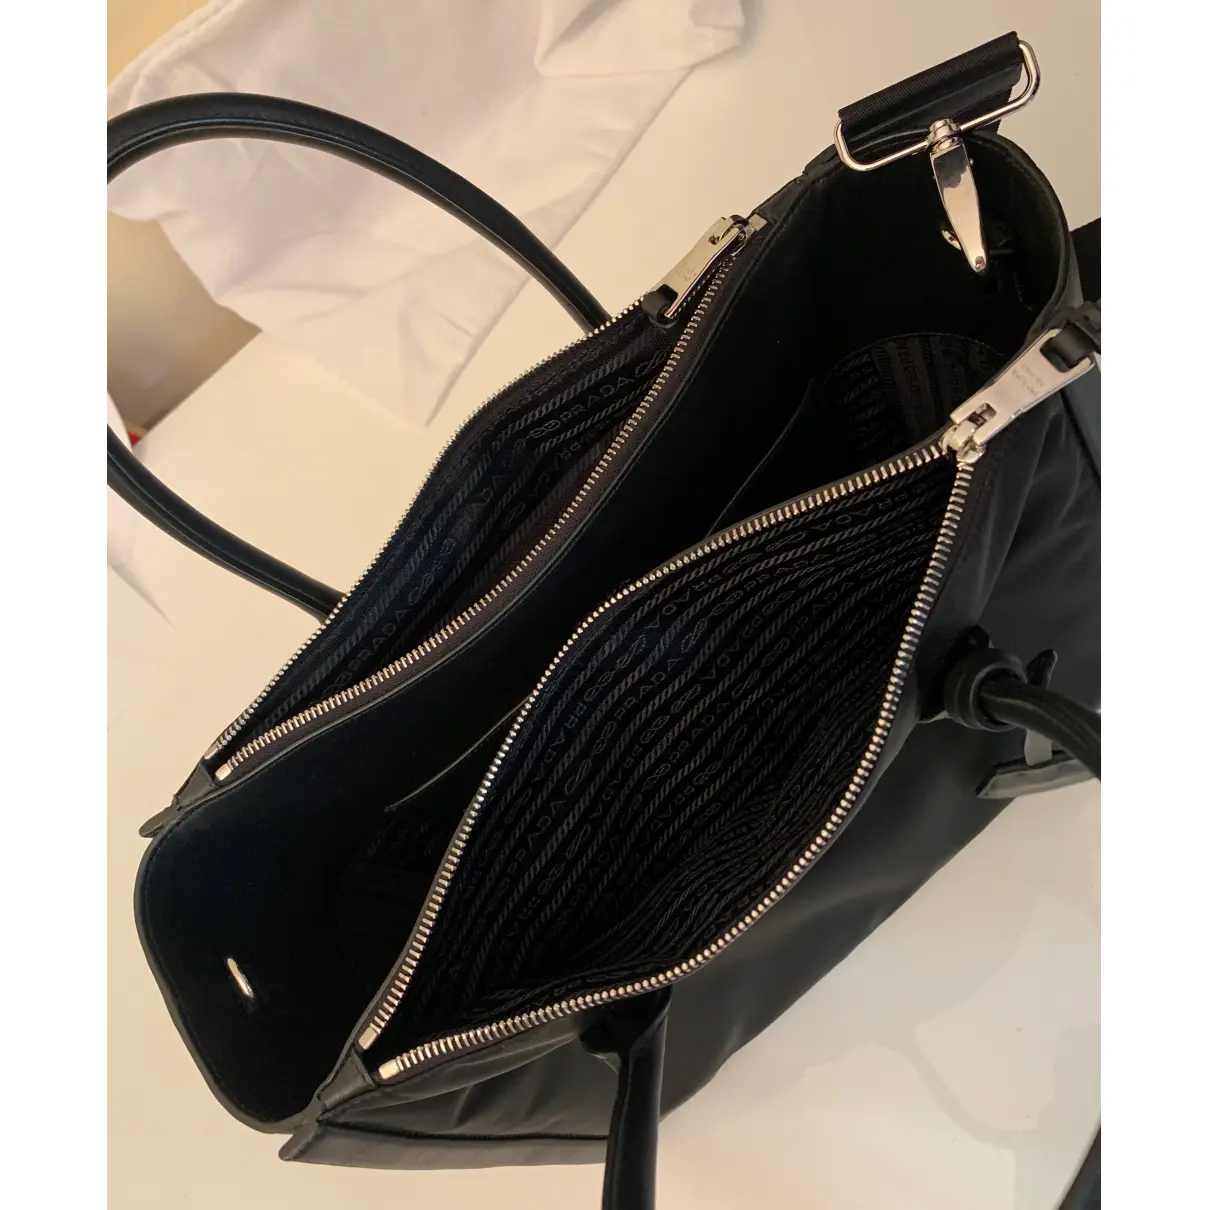 Concept leather handbag Prada